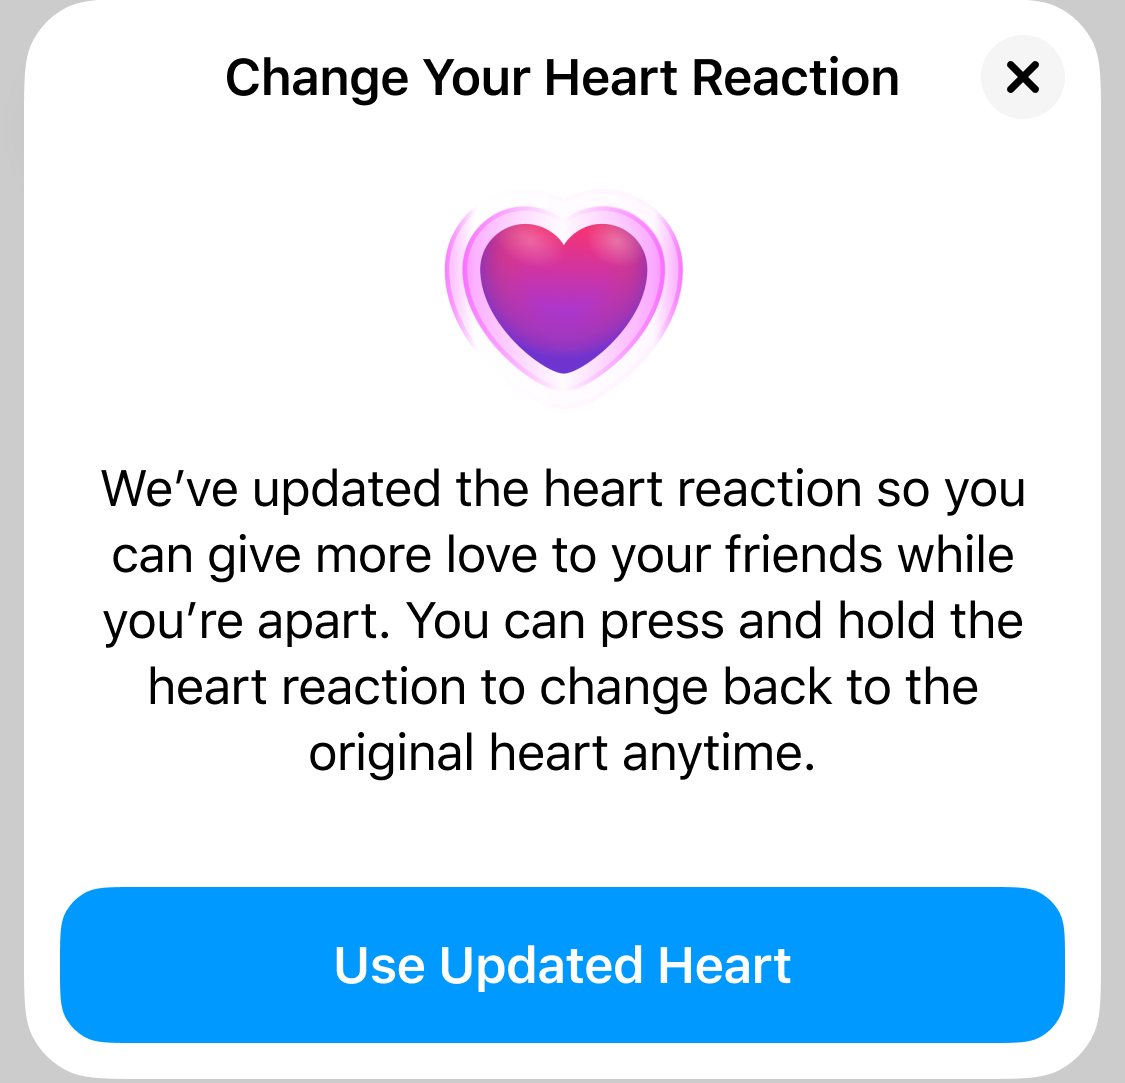 Den 17 april kommer den nya reaktionen, det pulserande hjärtat, till Messenger.